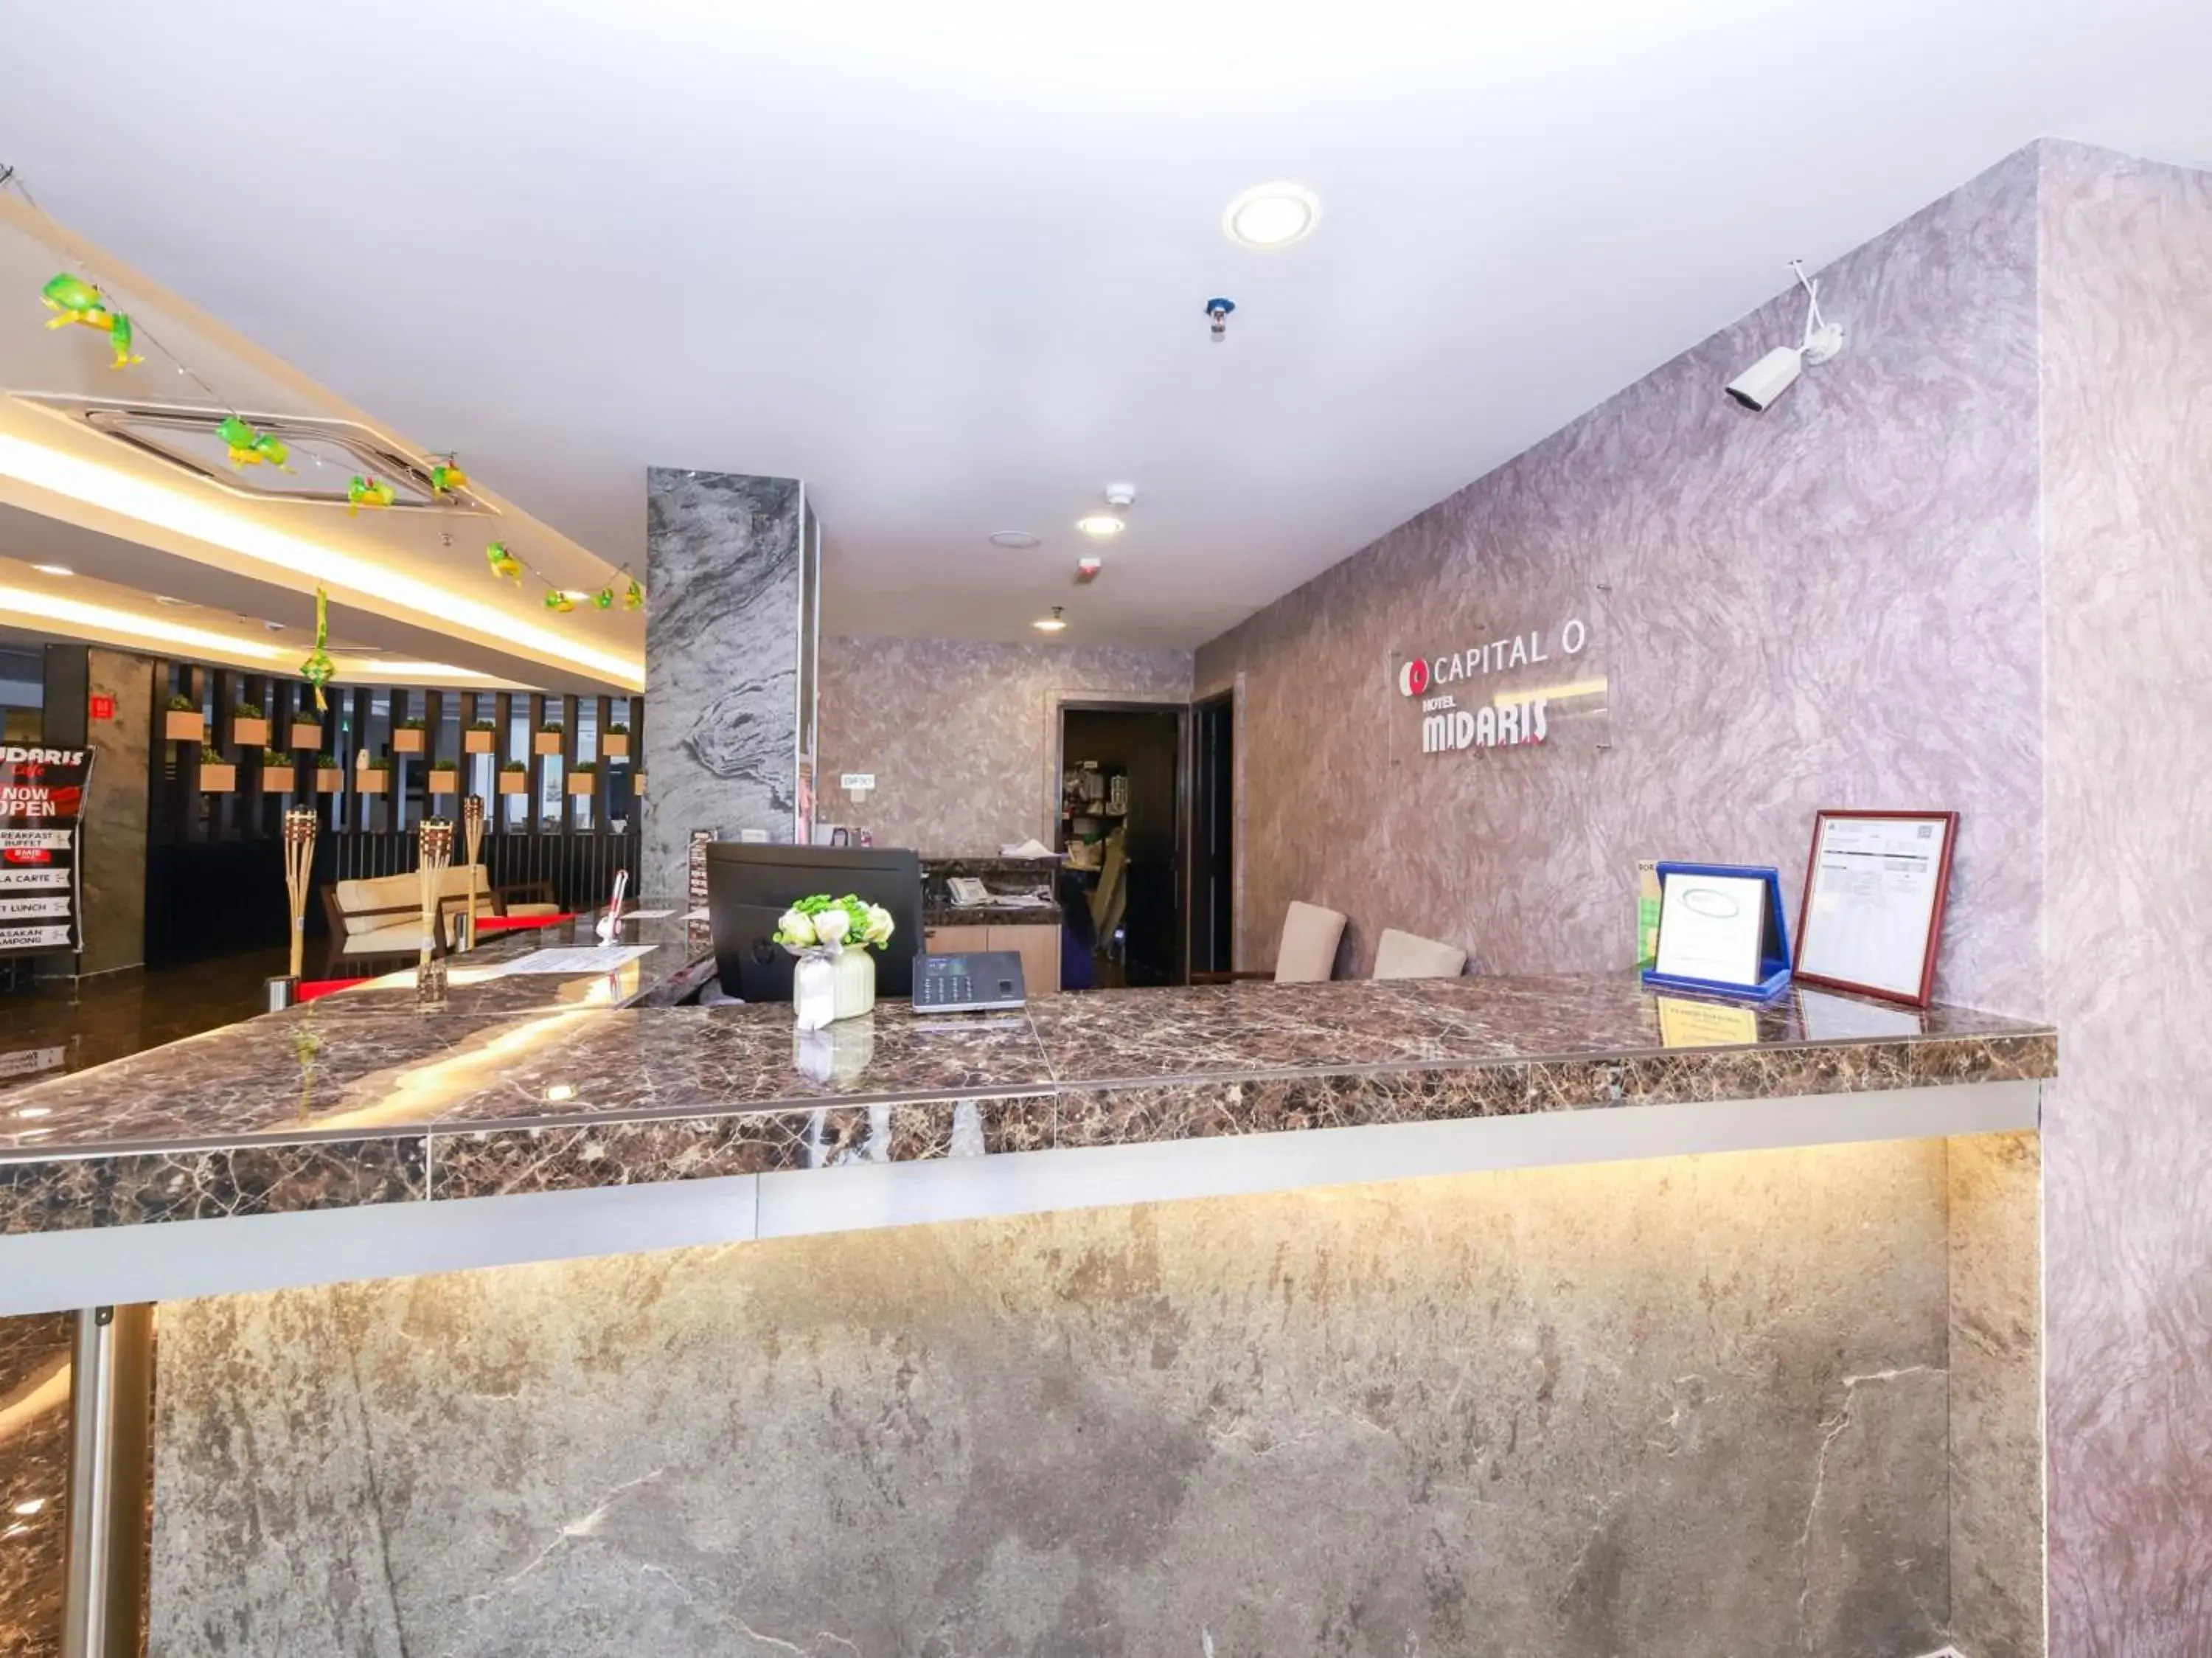 Lobby or reception in Hotel Midaris (Syariah) Kuala Lumpur